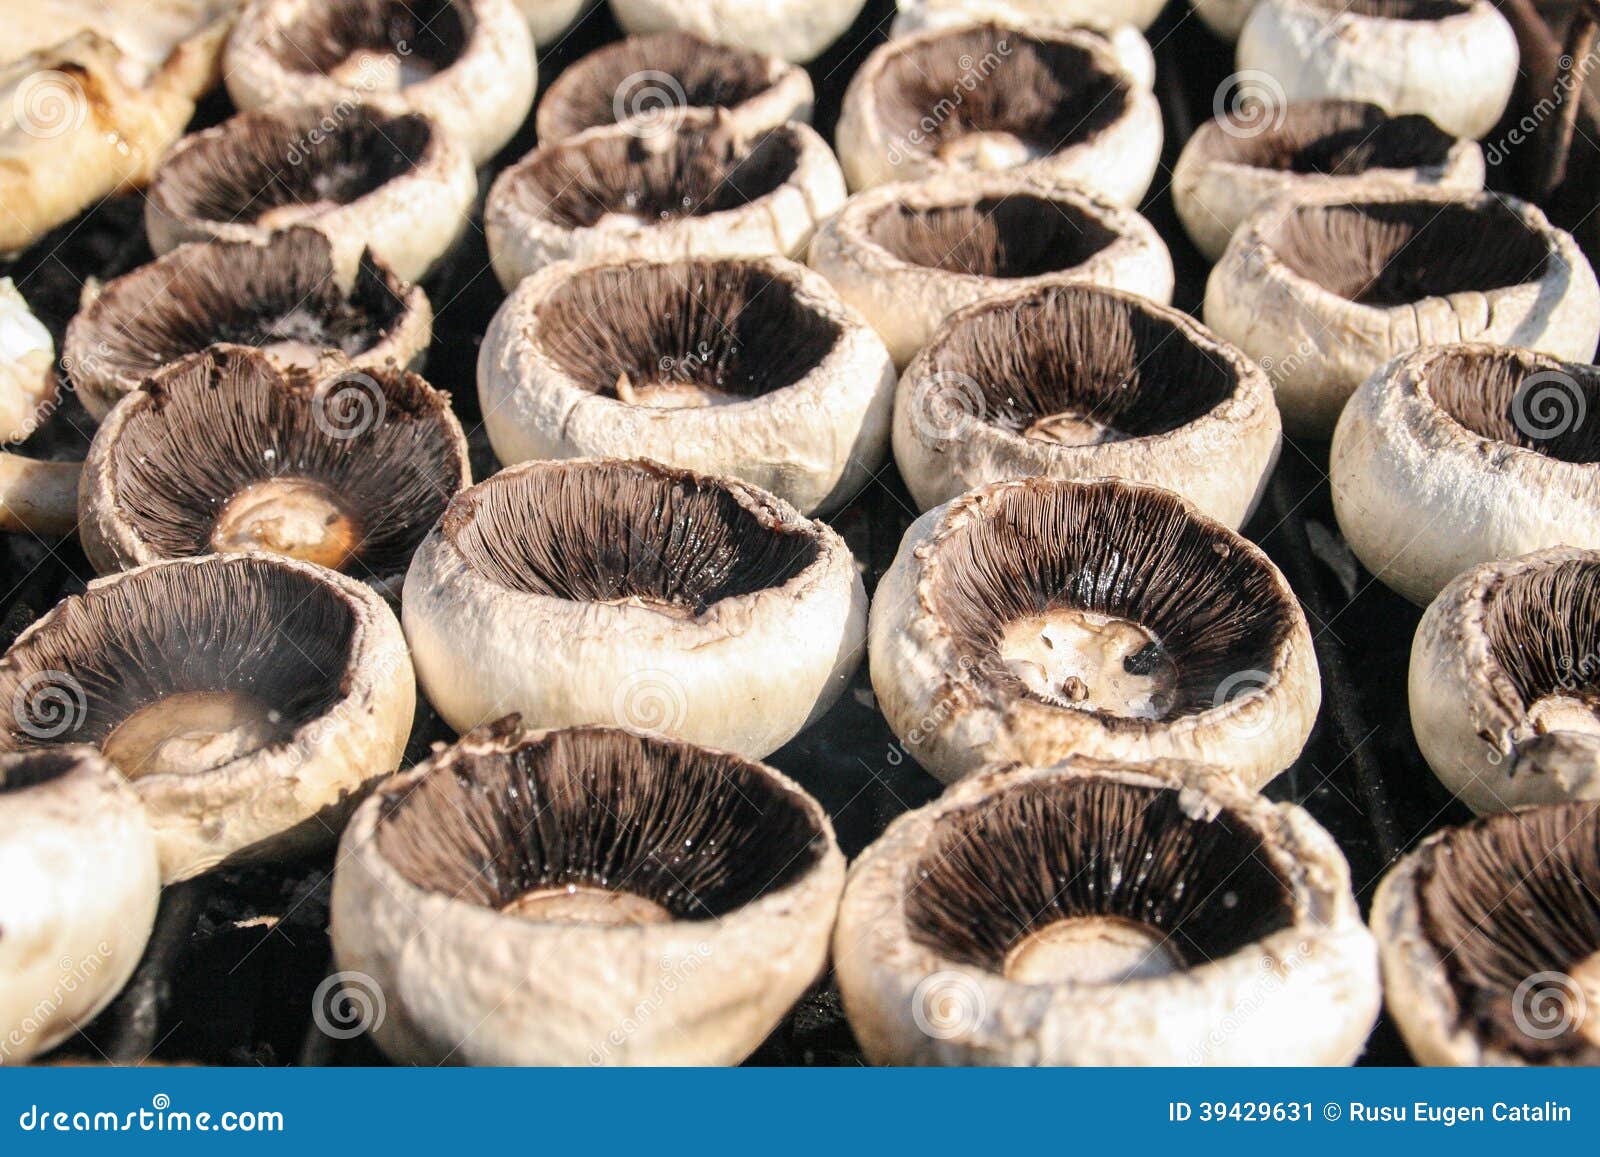 Gegrillte Pilze stockbild. Bild von grill, aufsteckspindeln - 39429631